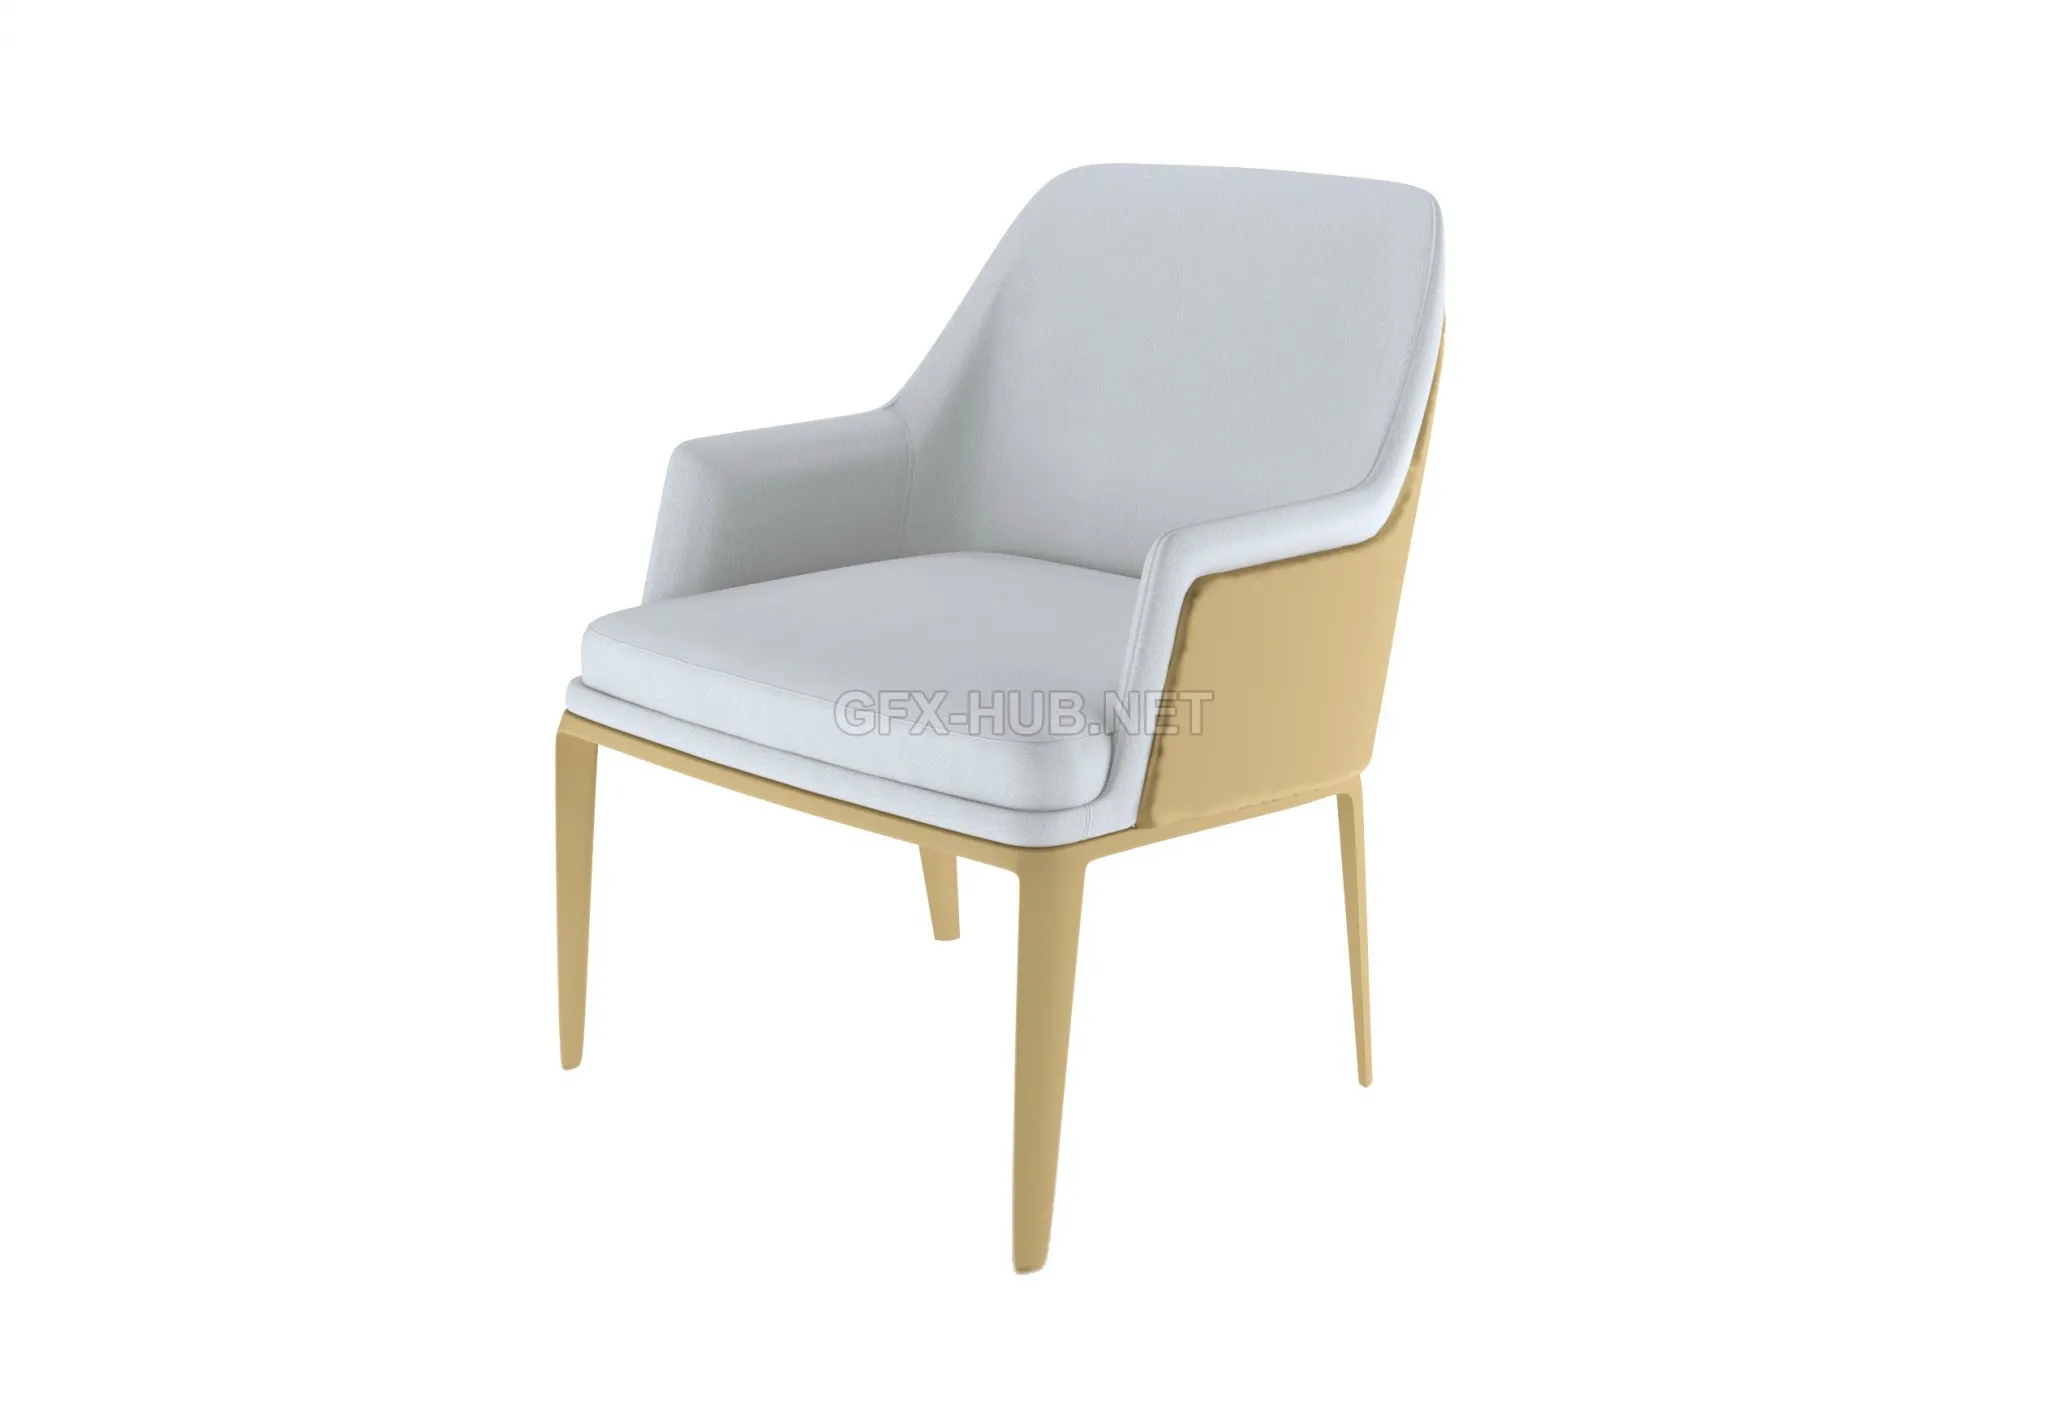 Chair bentley – 3980